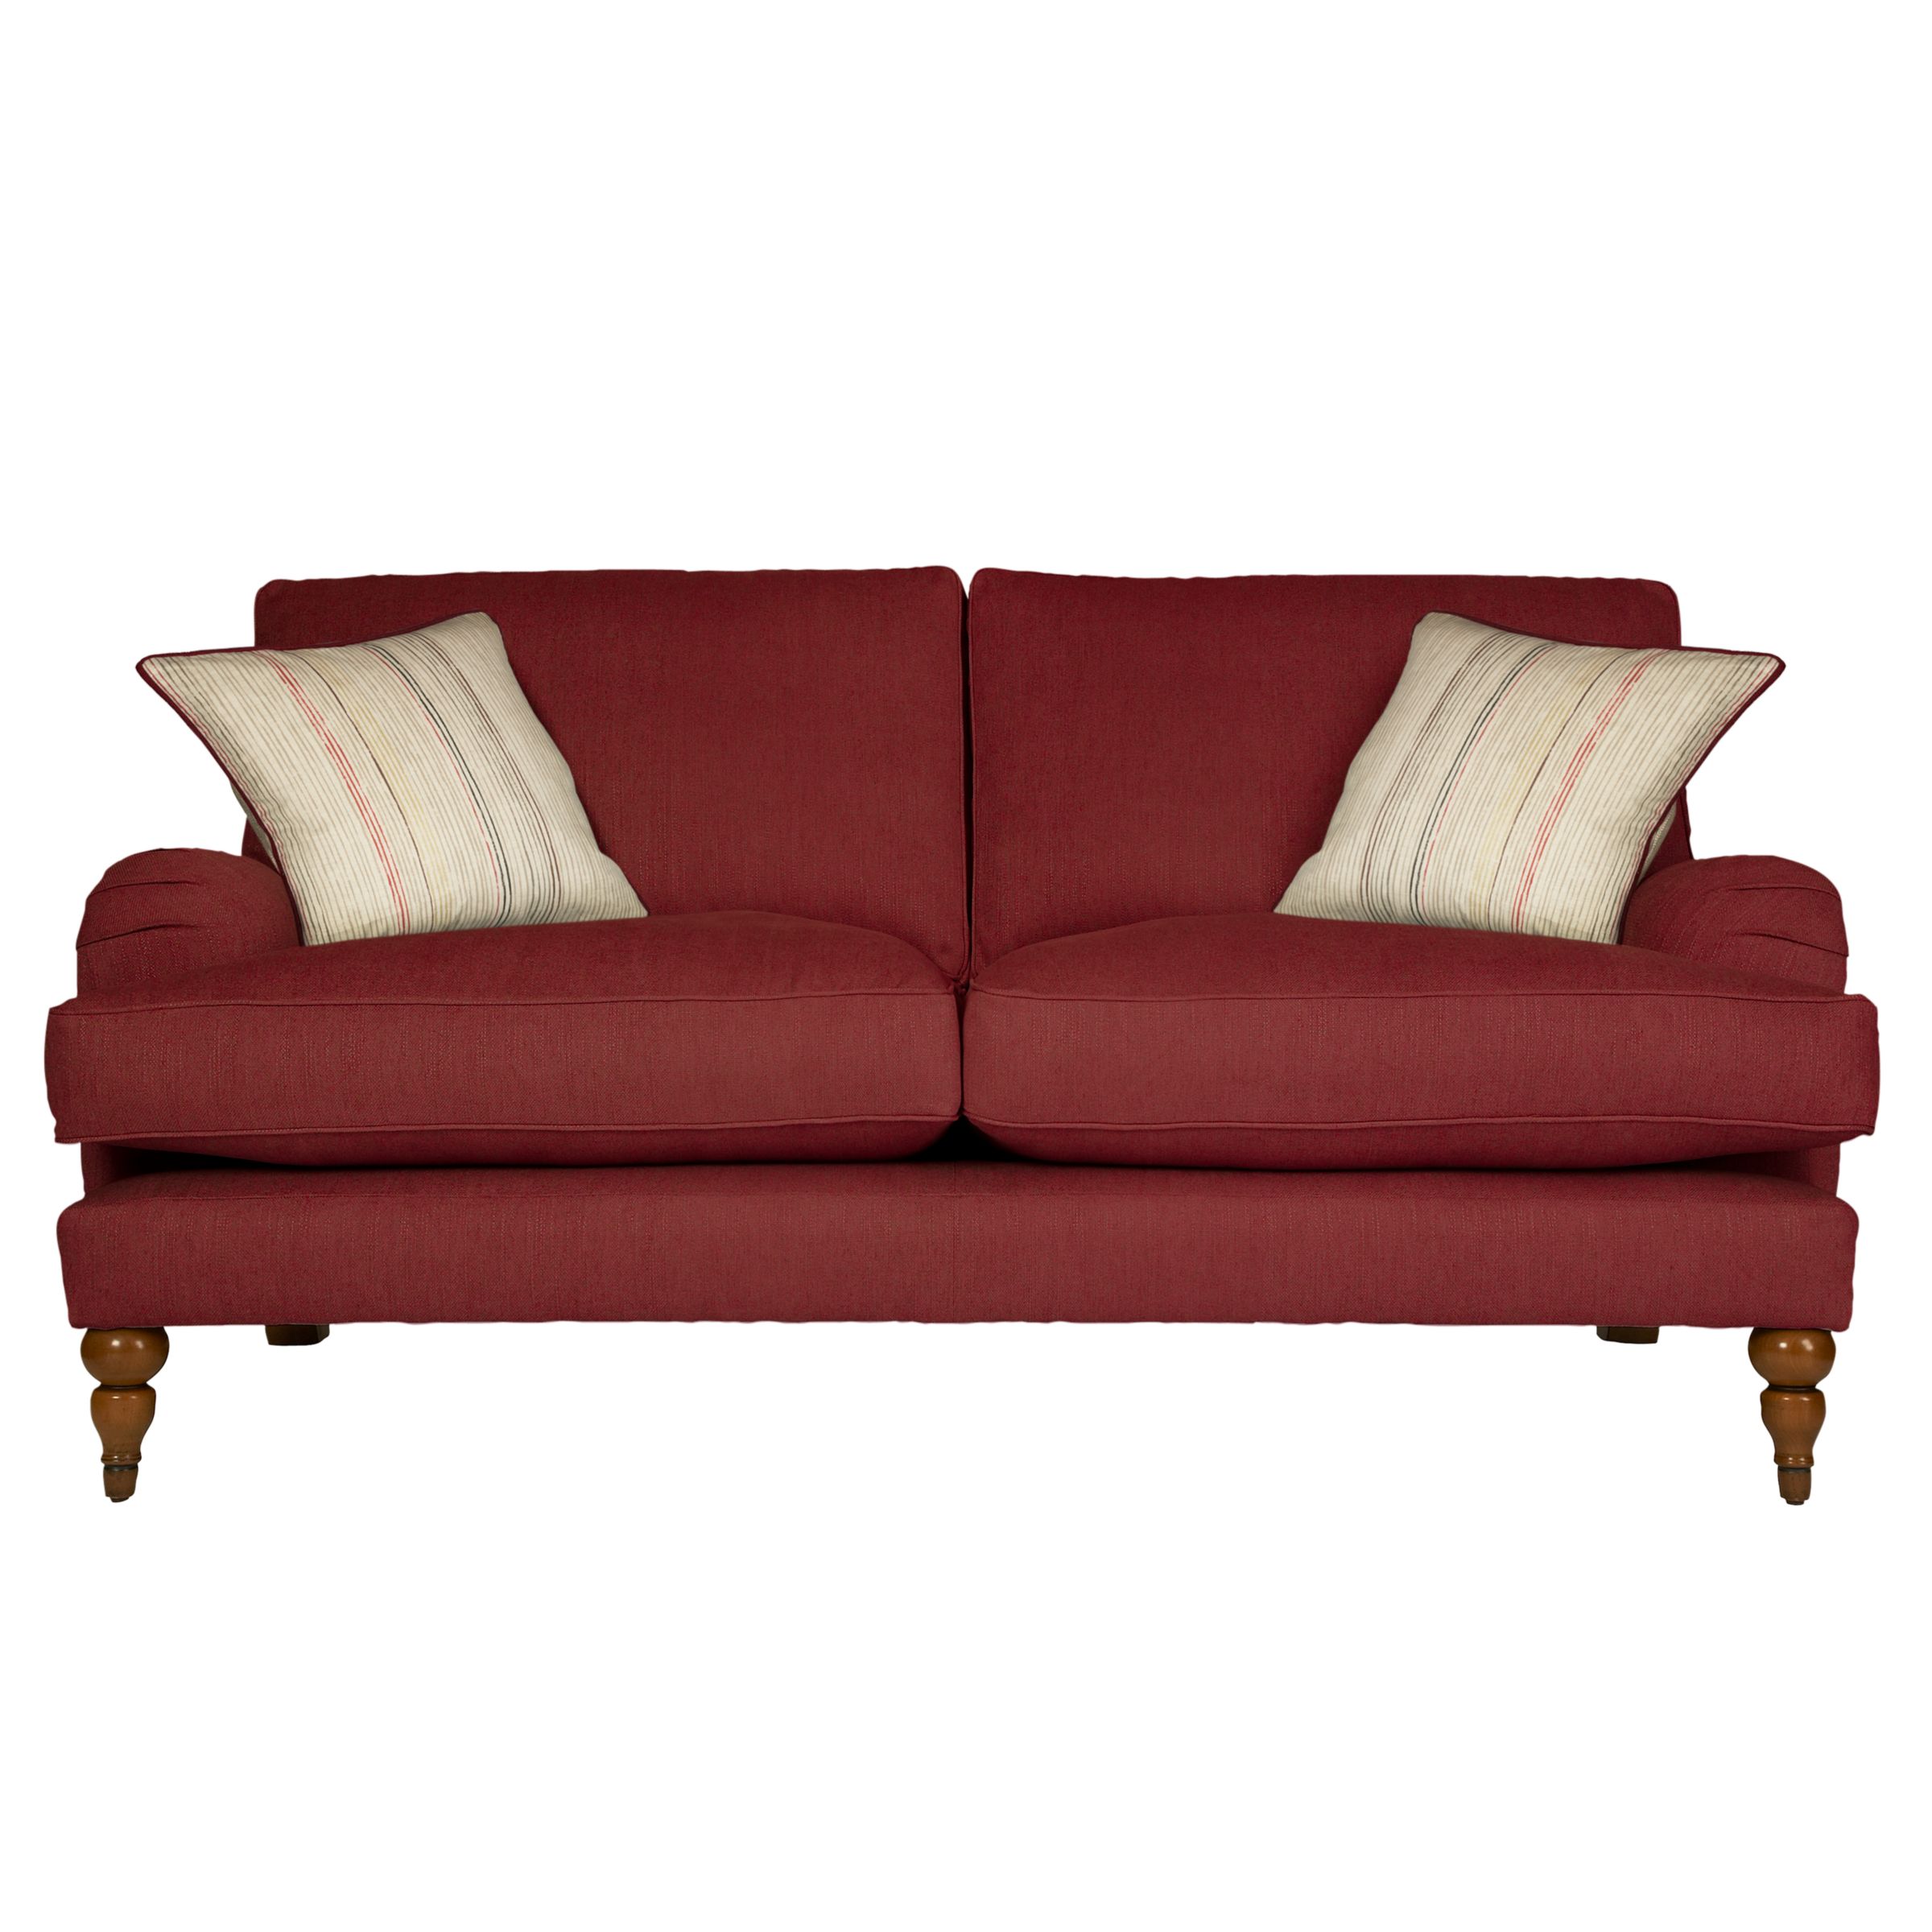 John Lewis Penryn Medium Sofa, Bordeaux / Sackville, width 176cm